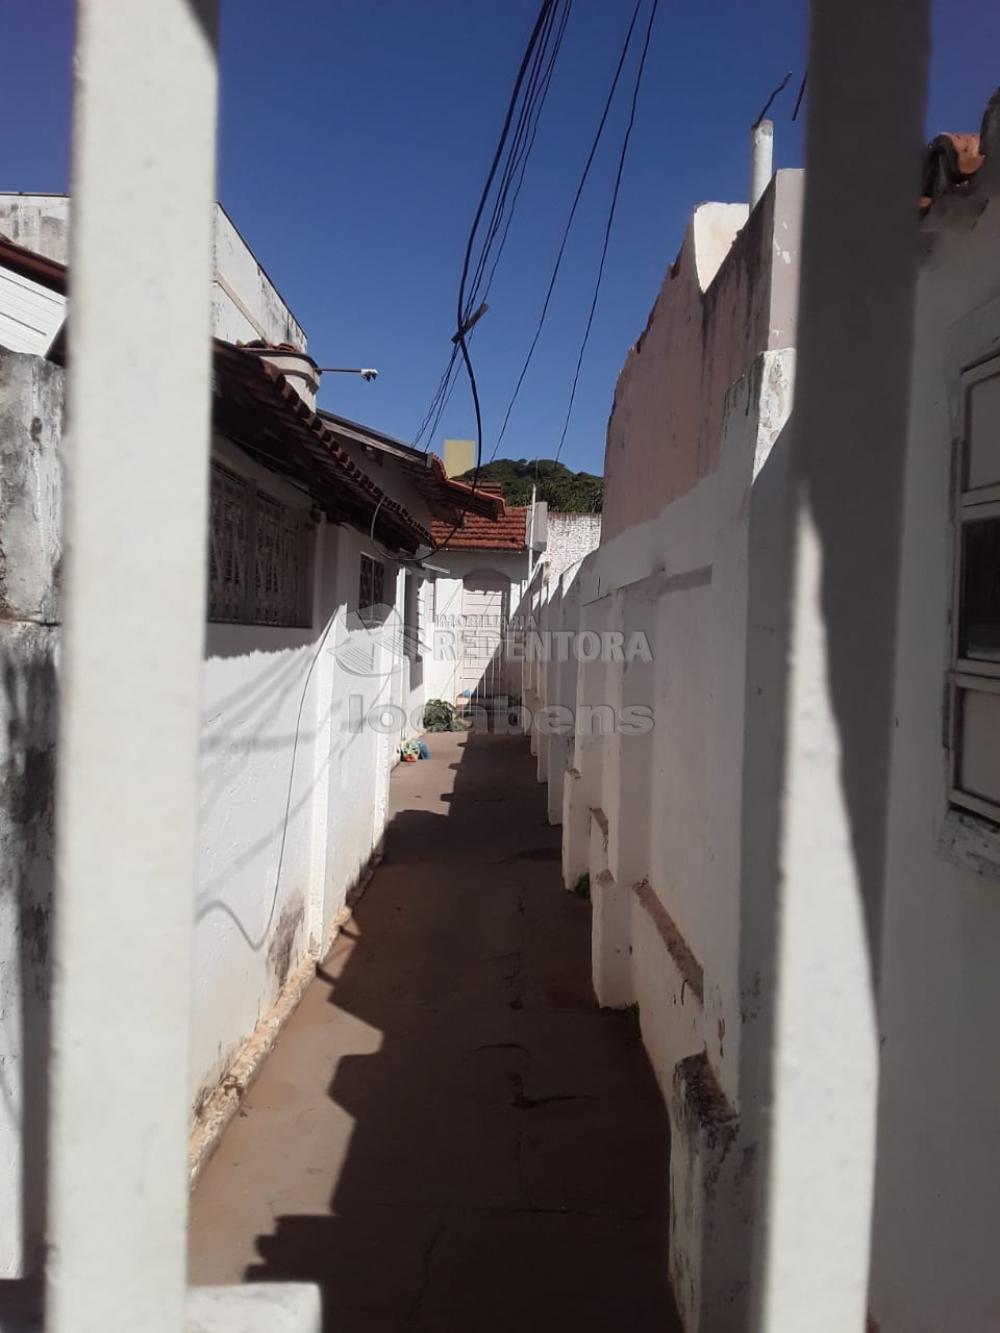 Comprar Casa / Padrão em São José do Rio Preto R$ 420.000,00 - Foto 1